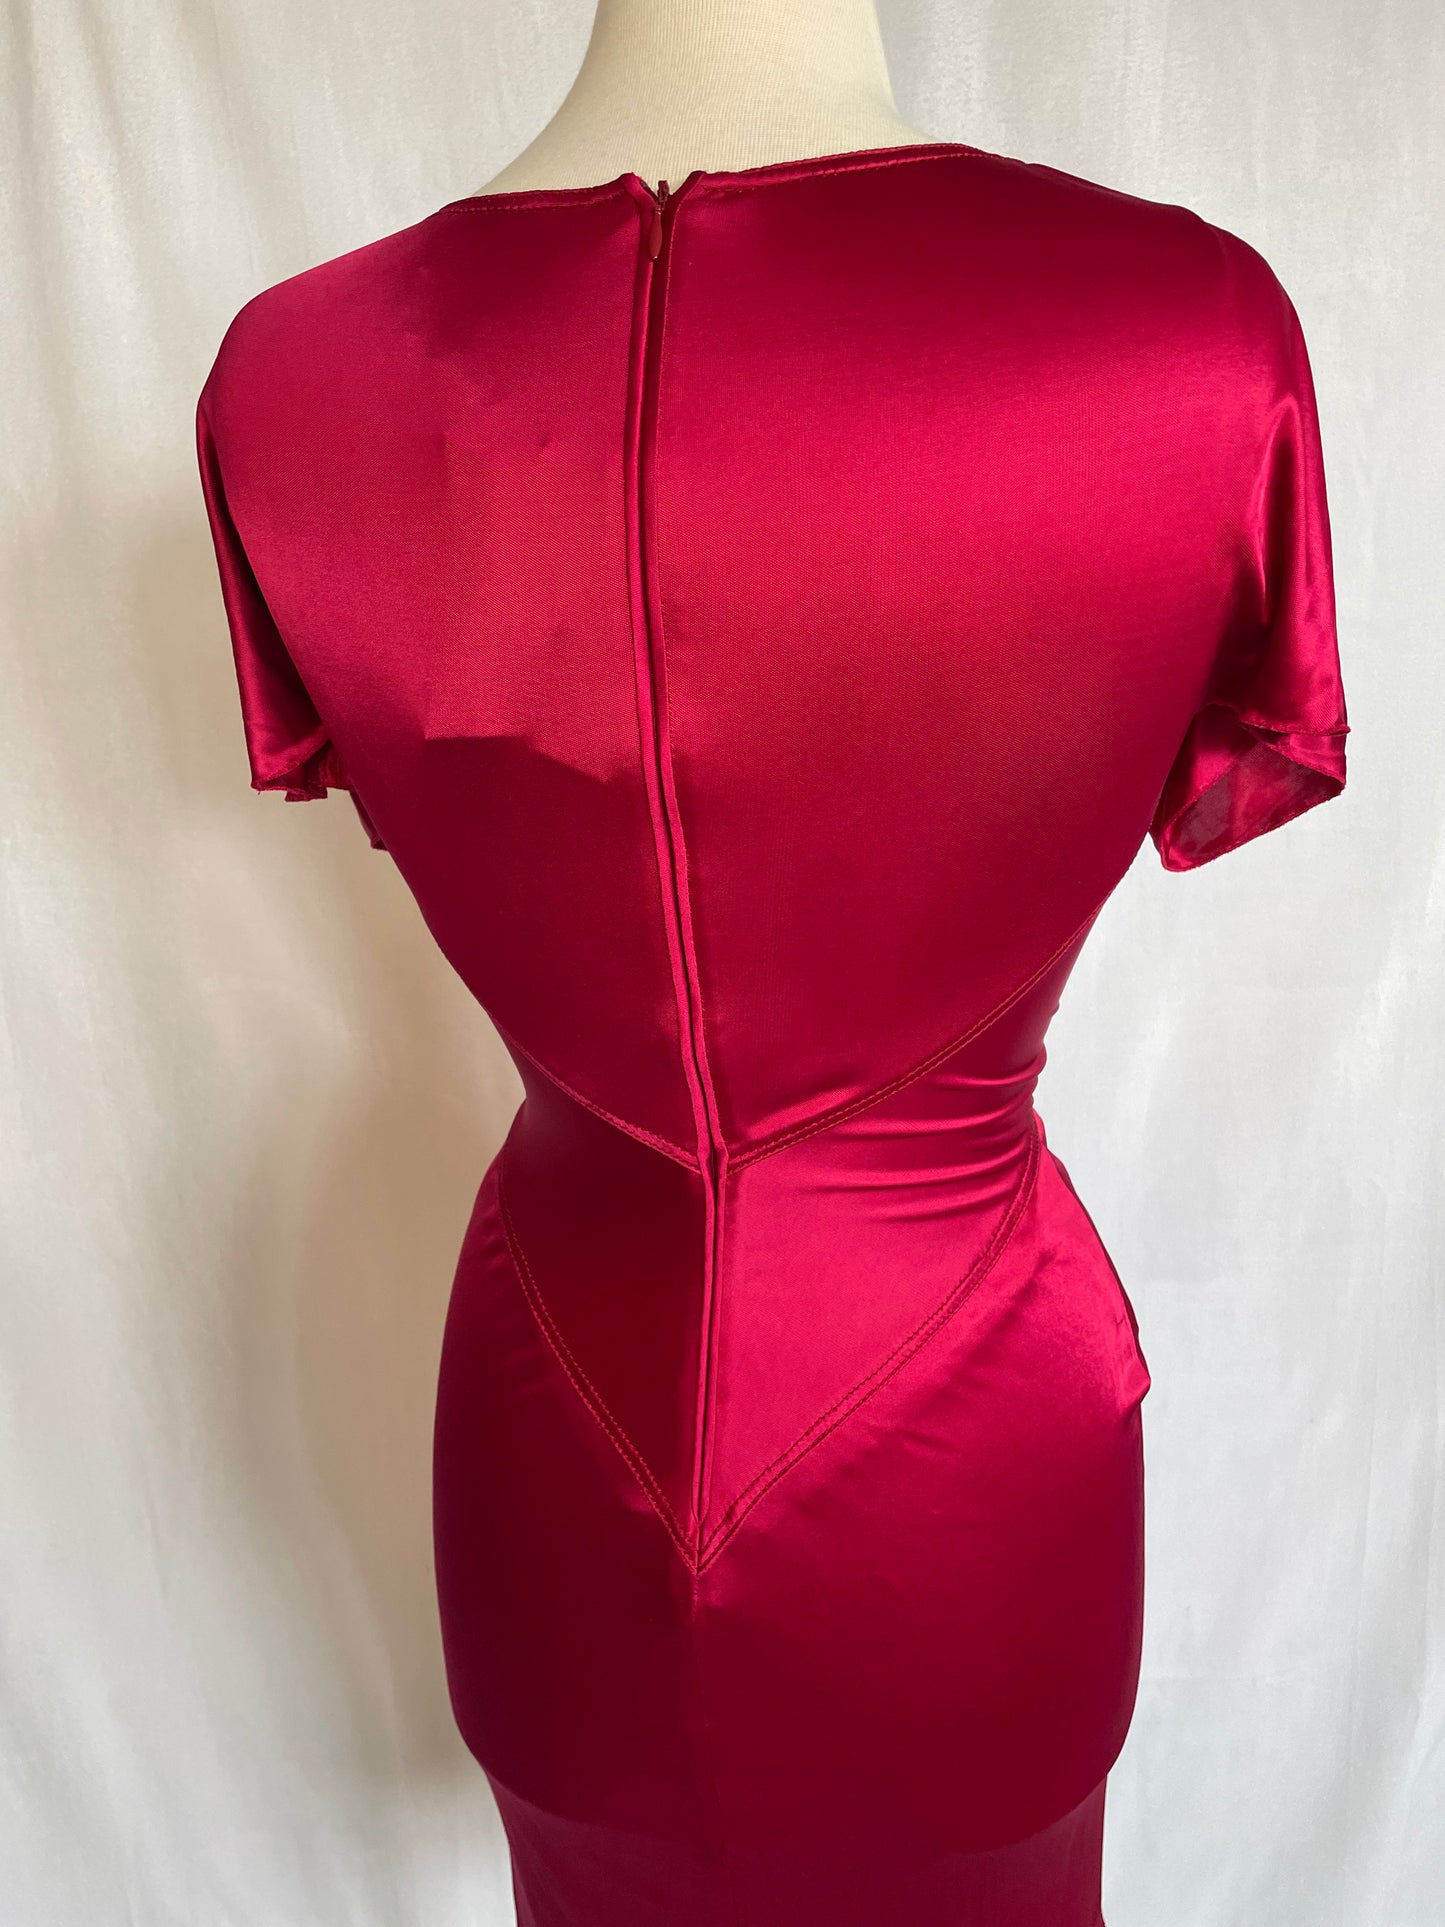 Glamorous Vintage Art Deco Zac Posen Gown